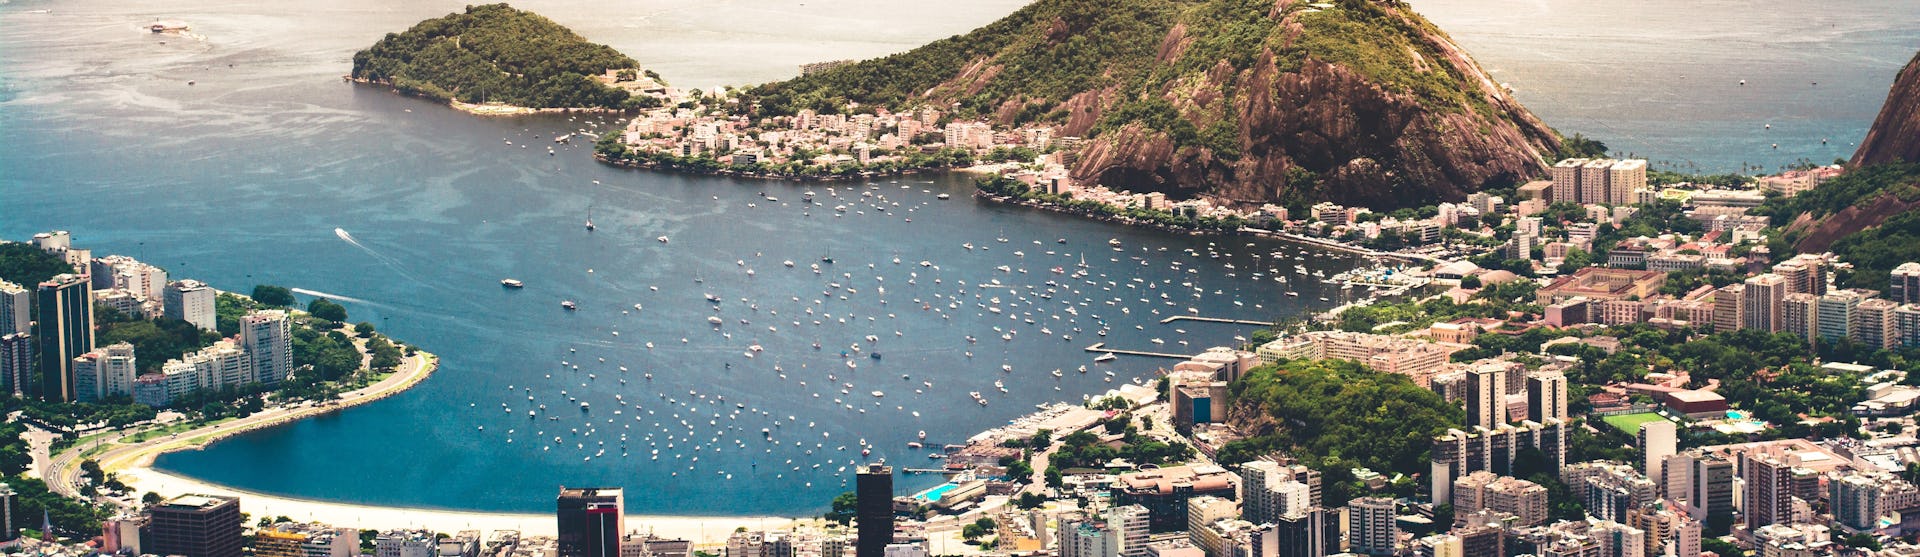 Foto på Rio de Janeiro från ovan med byggnader, berg och kristallblått vatten.